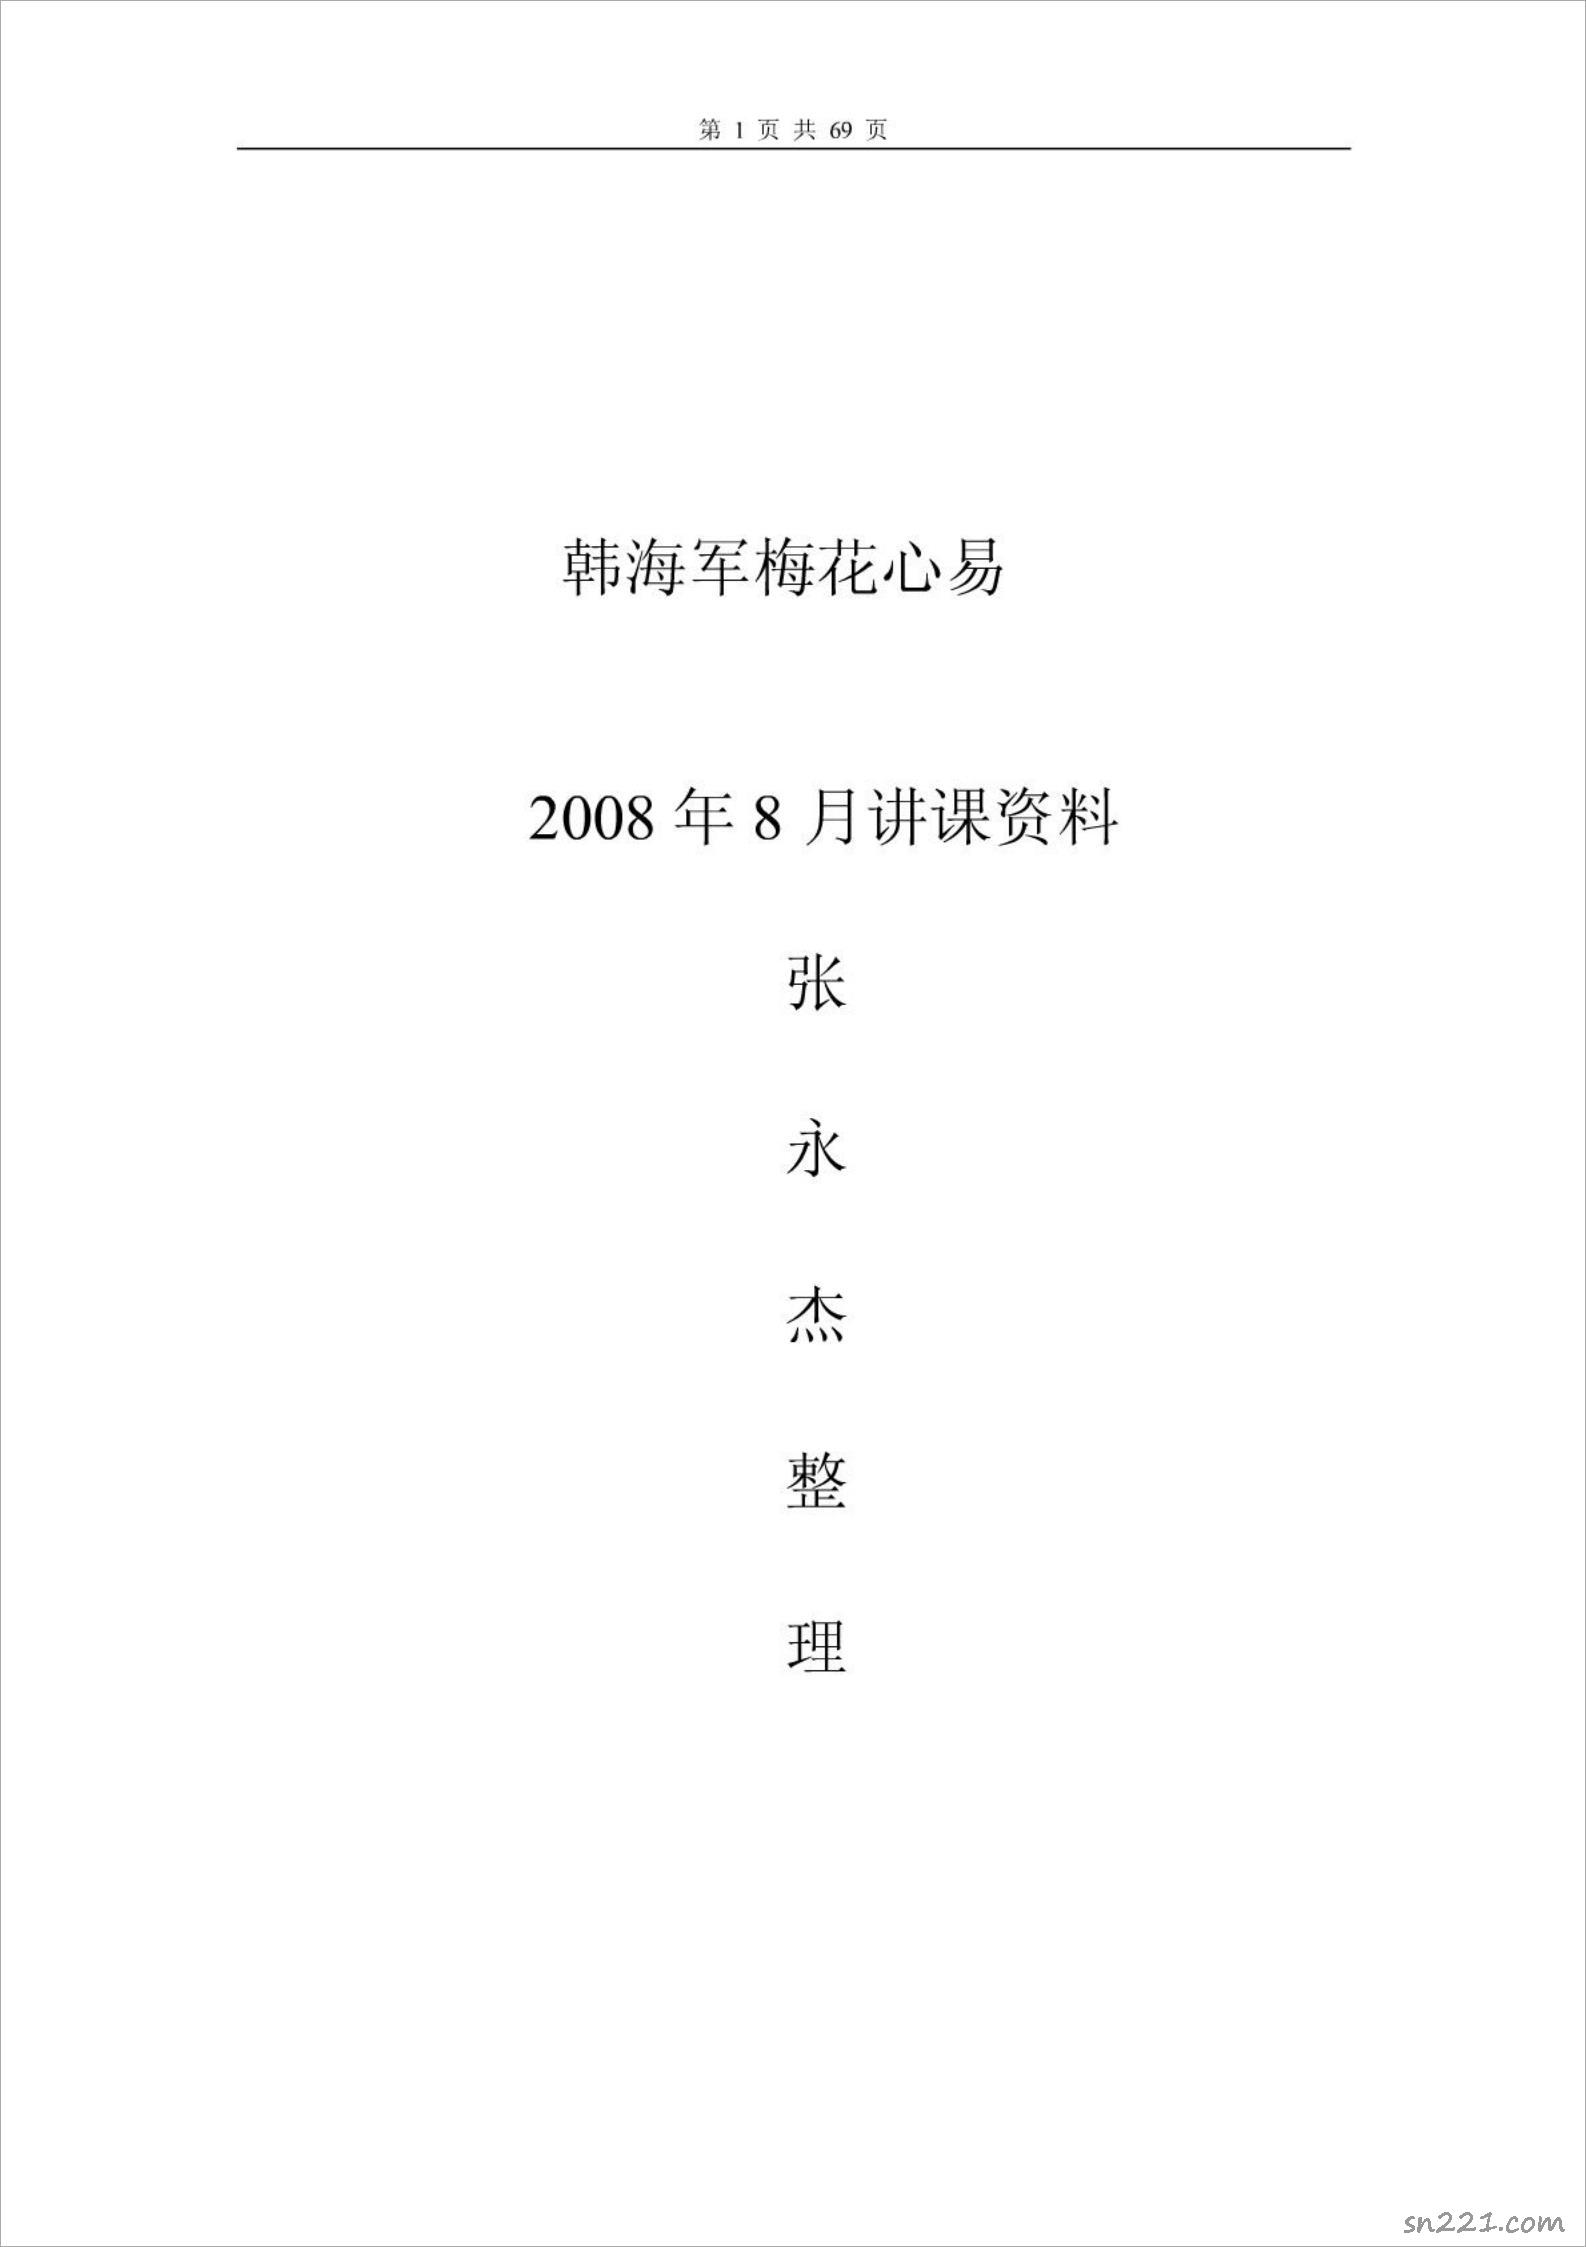 韓海軍講課資料.pdf